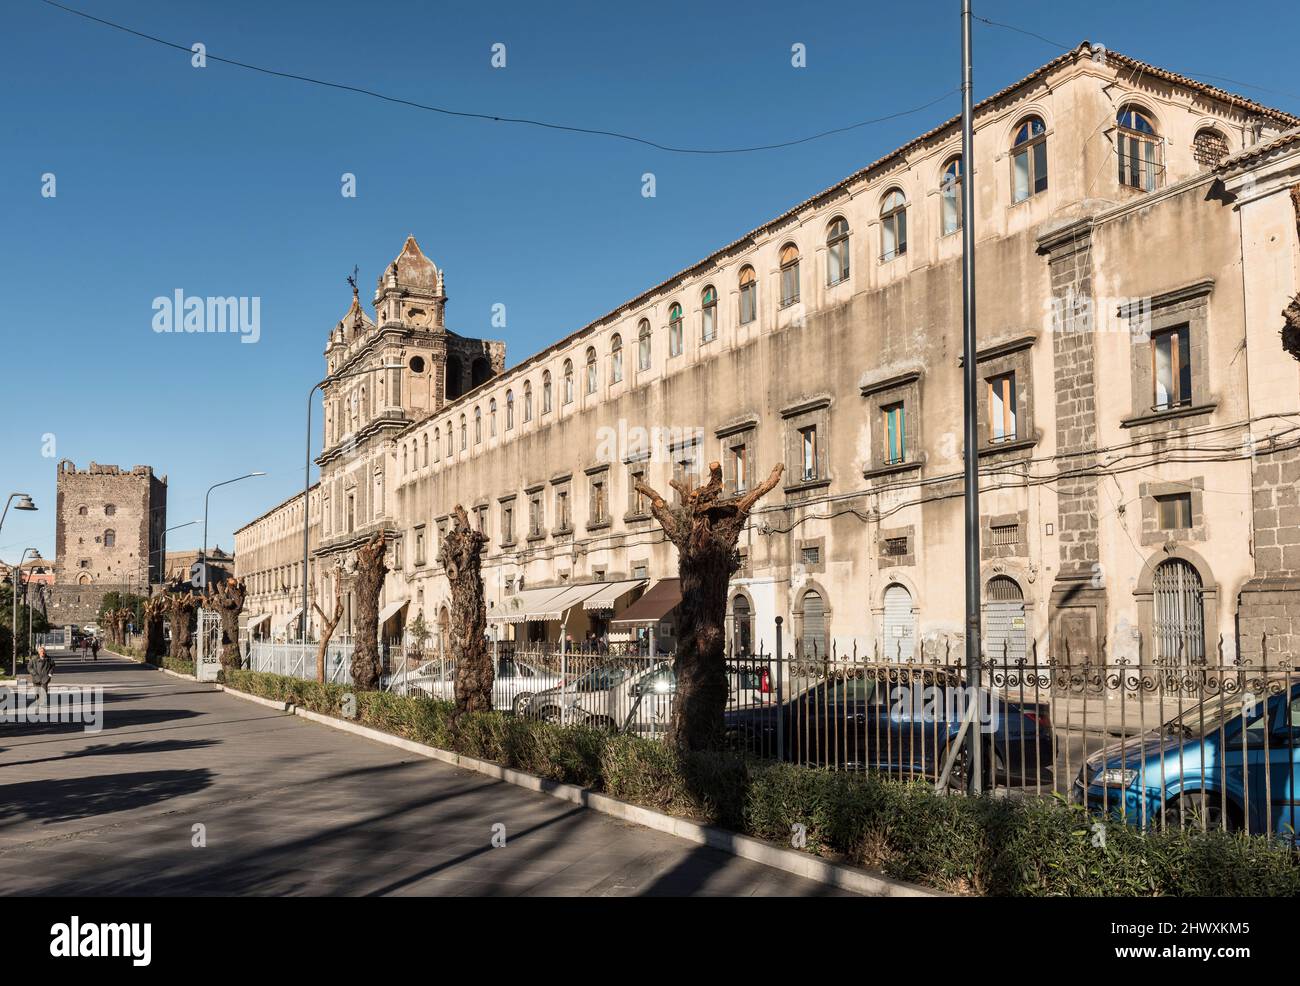 El gran Monastero di Santa Lucía en Adrano, Sicilia, Italia. Ahora una escuela, fue fundada como un monasterio benedictino en 1157 pero reconstruida en el 18c Foto de stock